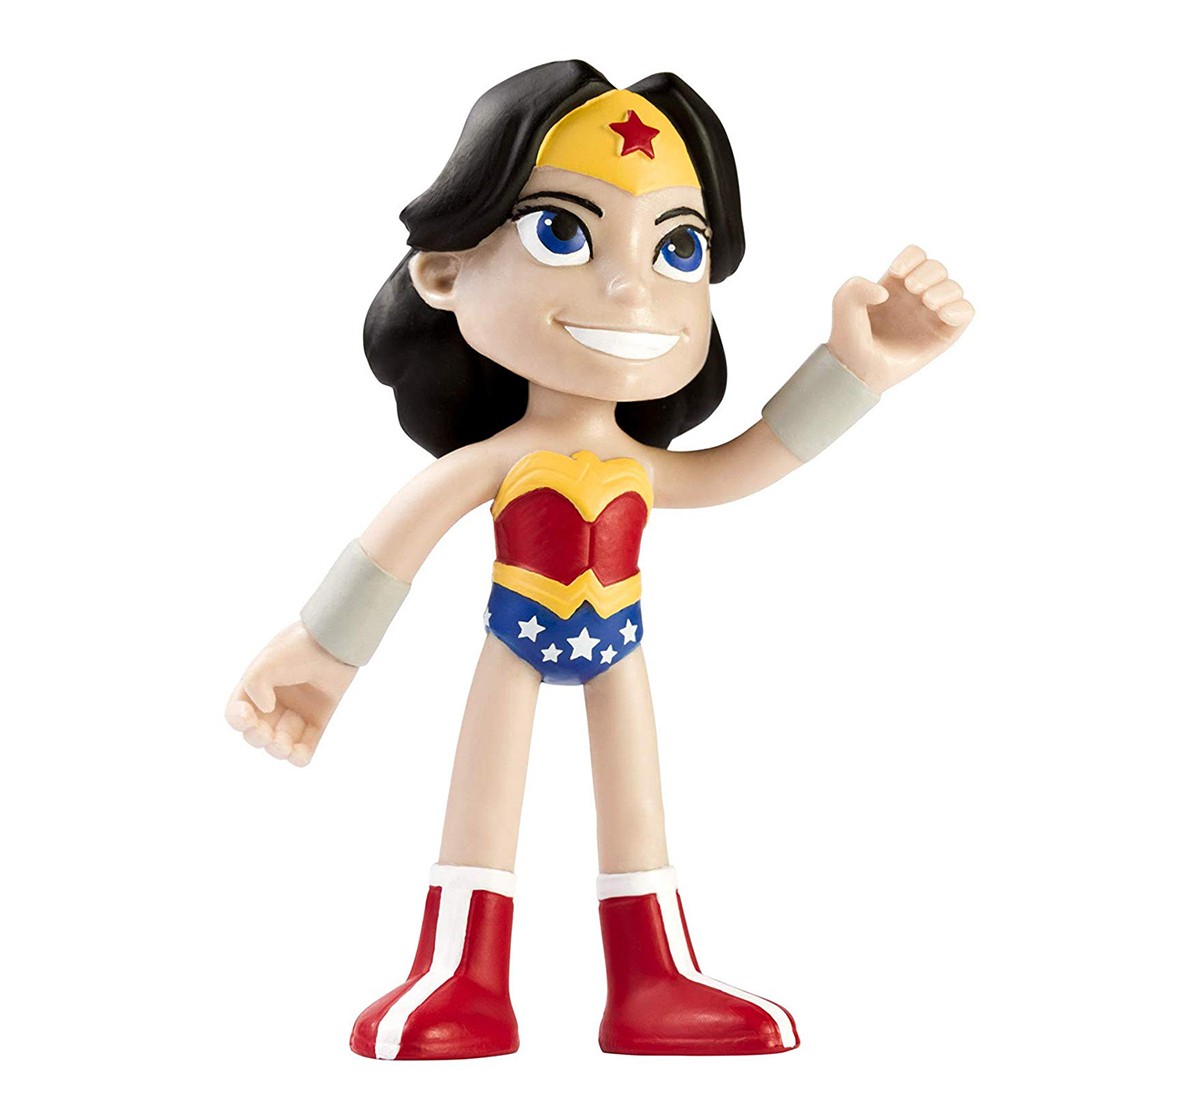 NJ Croce DC Wonder Woman Bend Deez Action Figure Toy for Kids age 3Y+ 